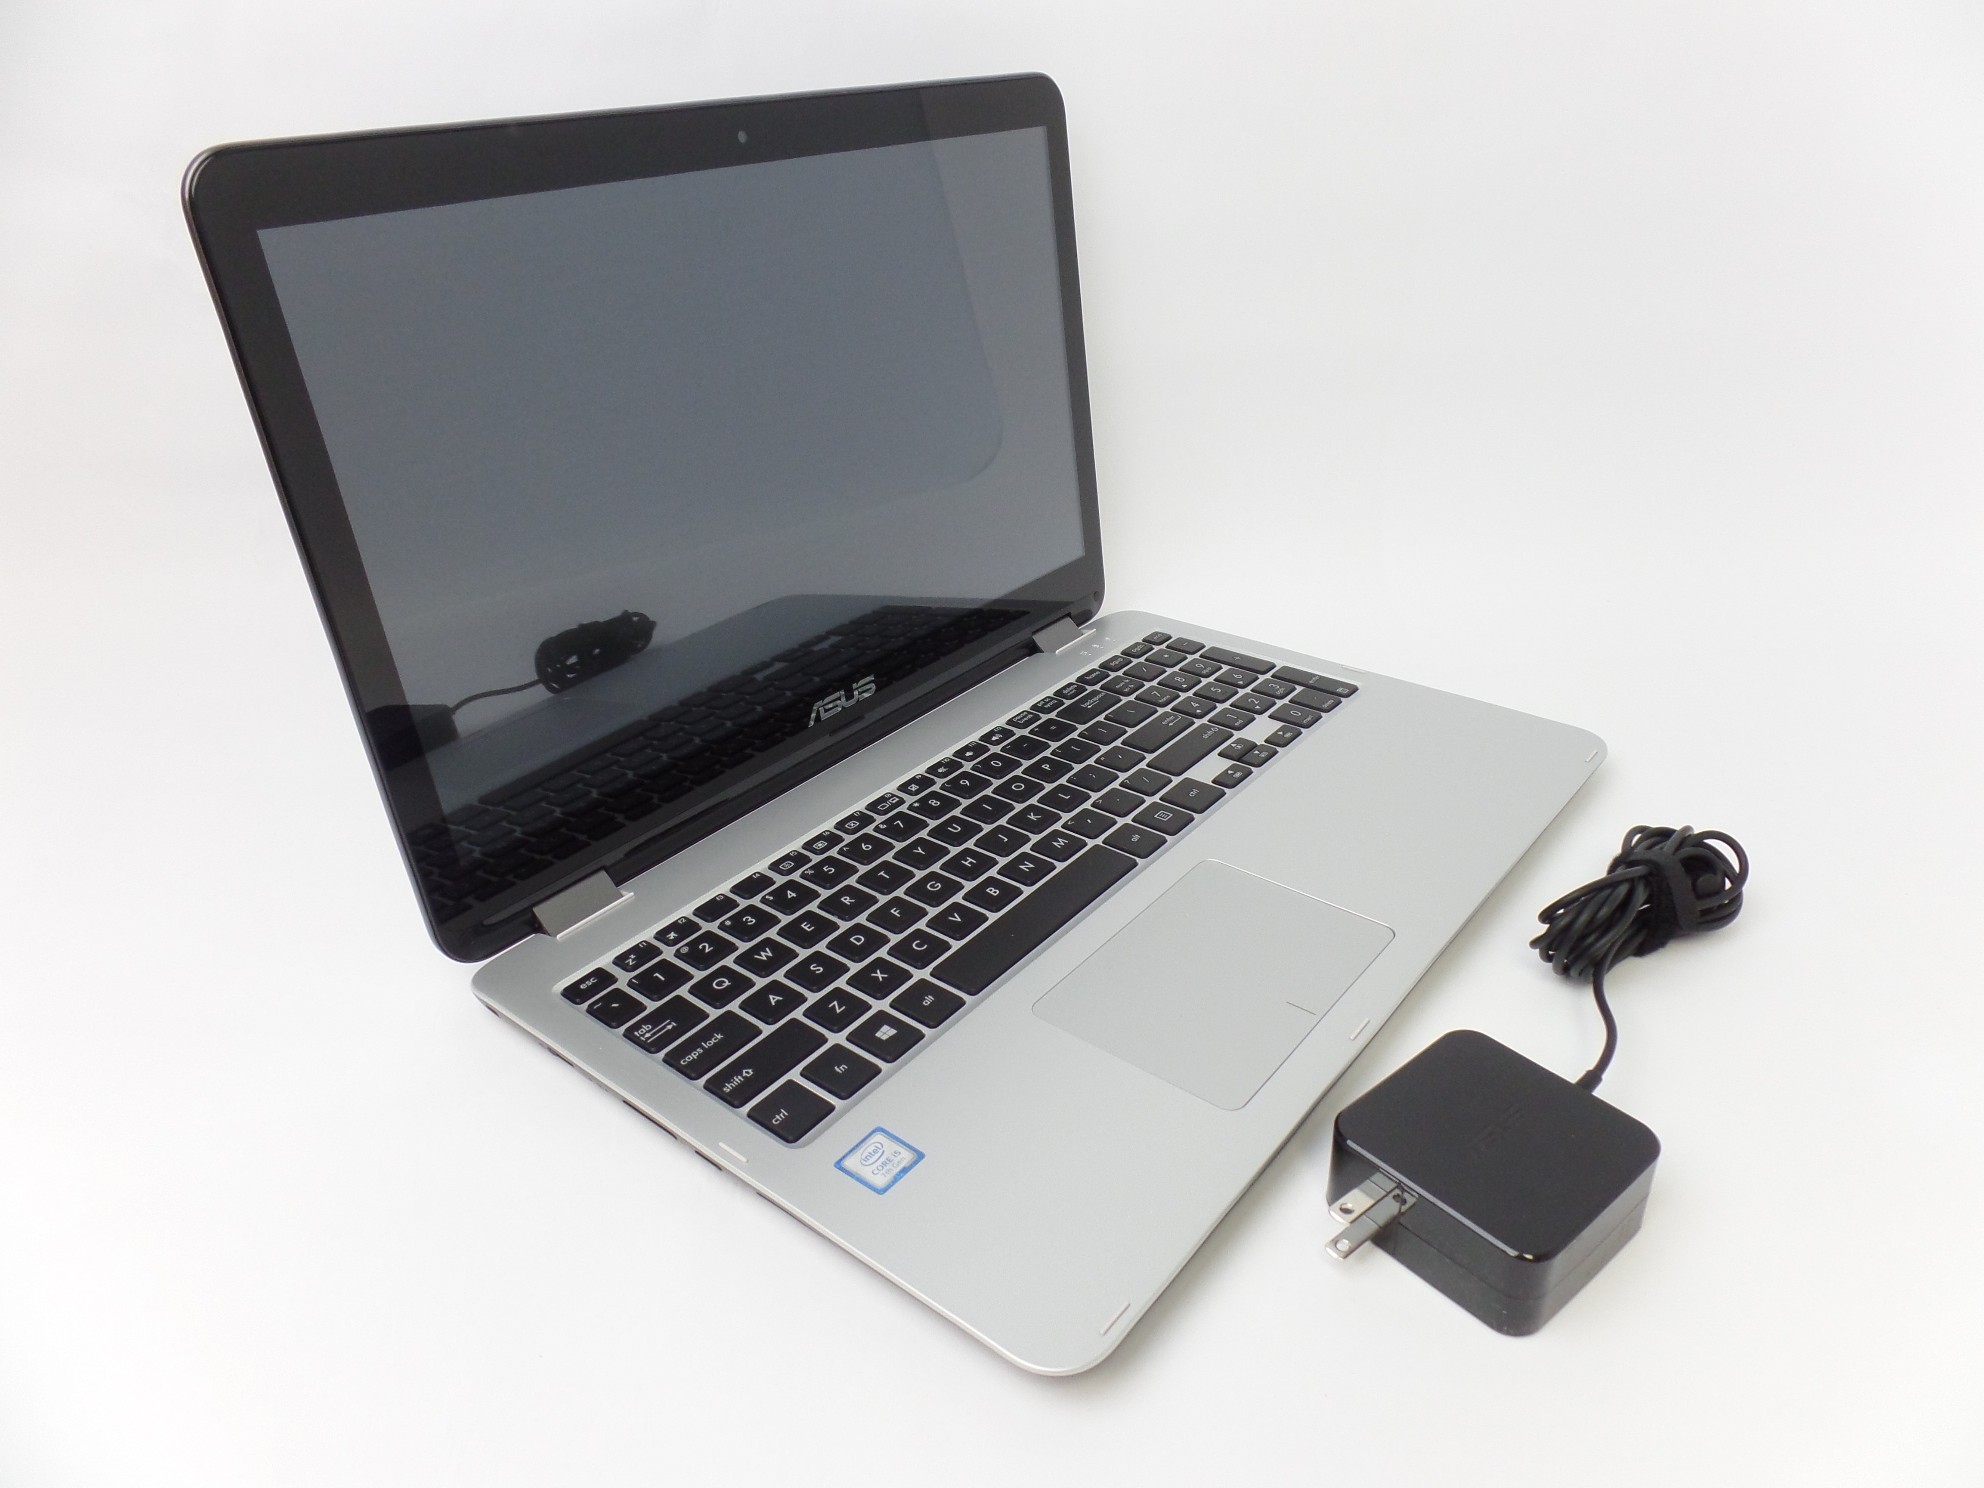 Asus R518UA-RH51T 15.6" FHD Touch i5-7200U 2.5GHz 8GB 1TB W10H 2in1 Laptop